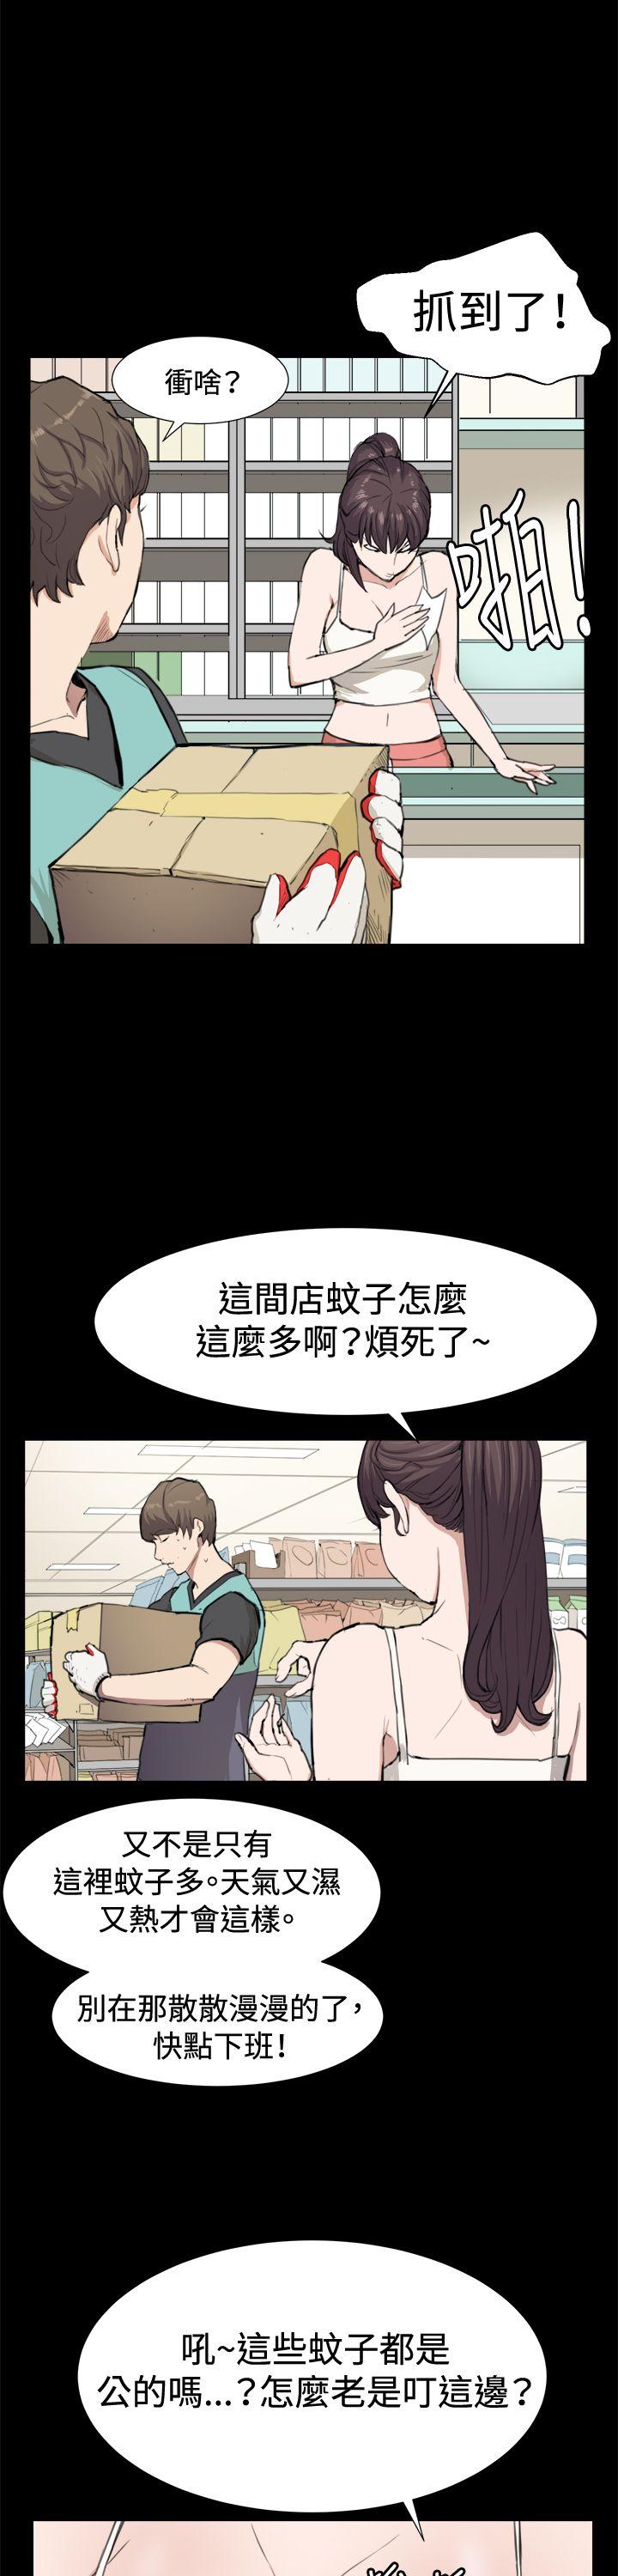 韩国污漫画 深夜便利店 第8话 2